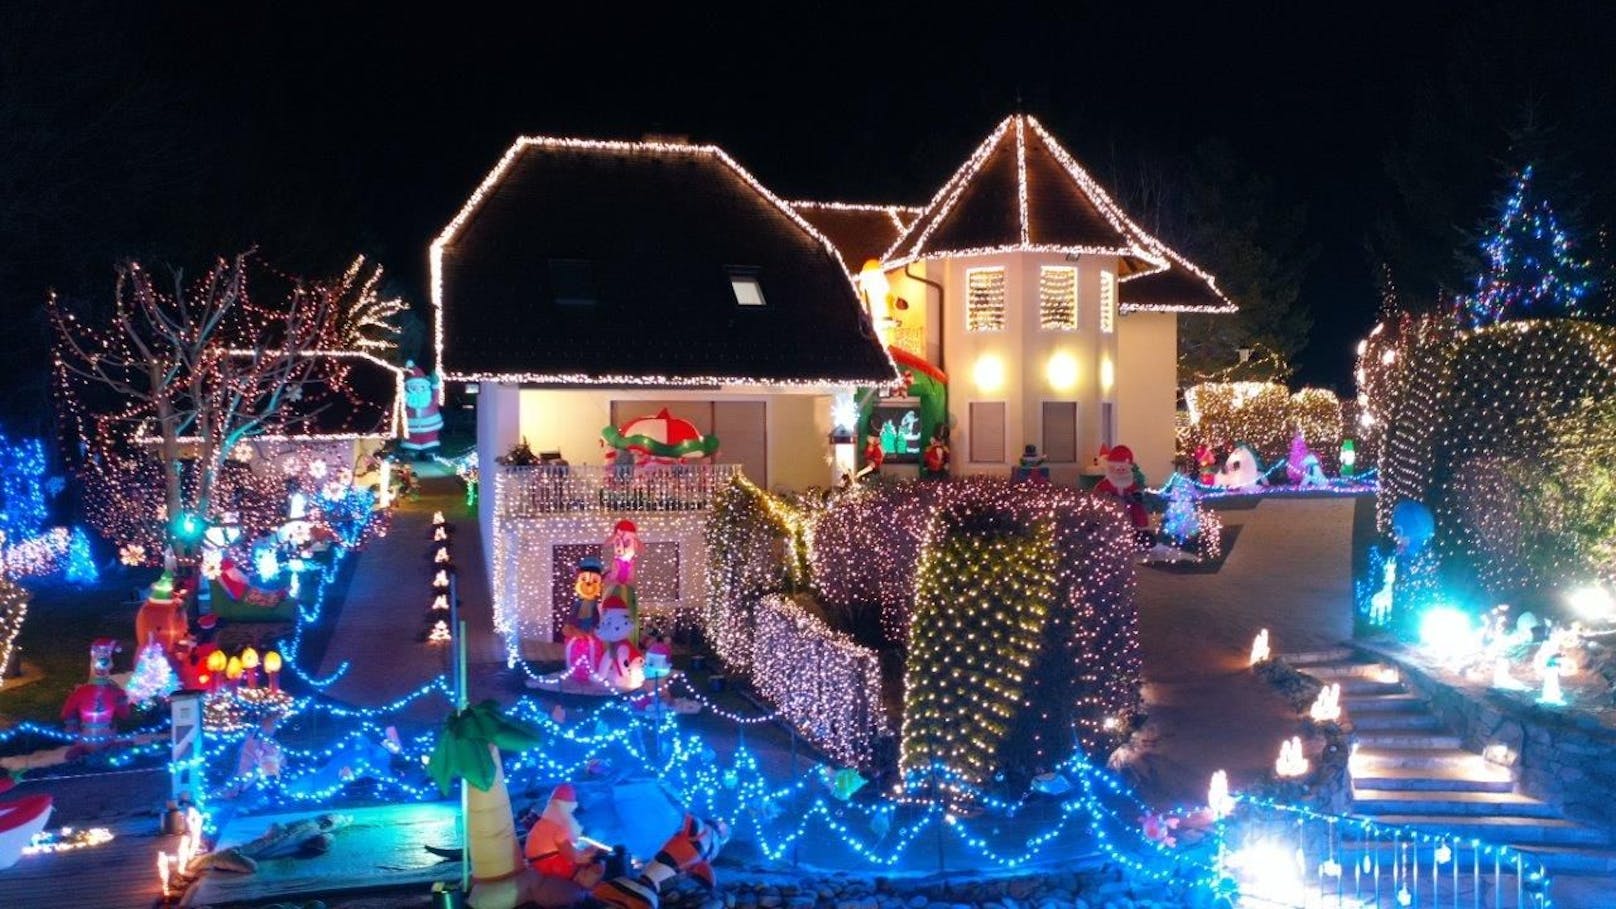 Am 27. November gehen im "Weihnachtshaus" in Bad Tatzmannsdorf auf jeden Fall die Lichter an.